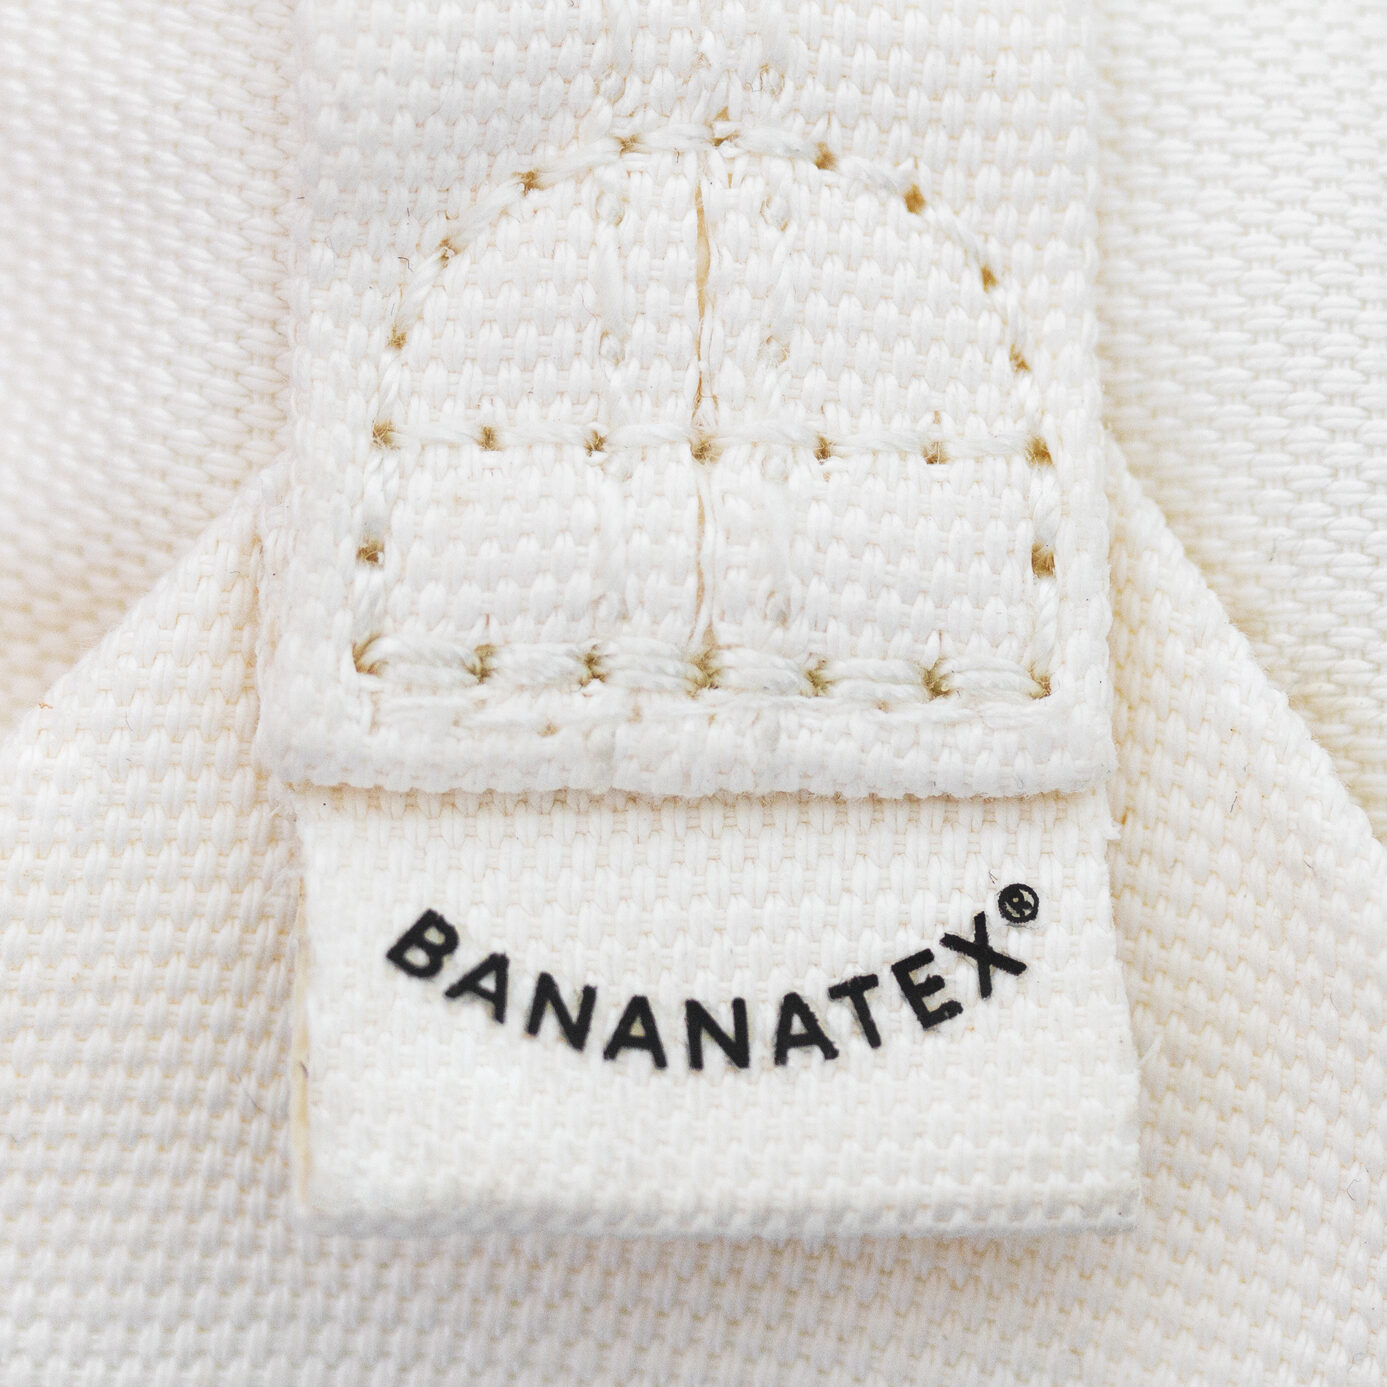 bananatex textile made from bananas, circular material library